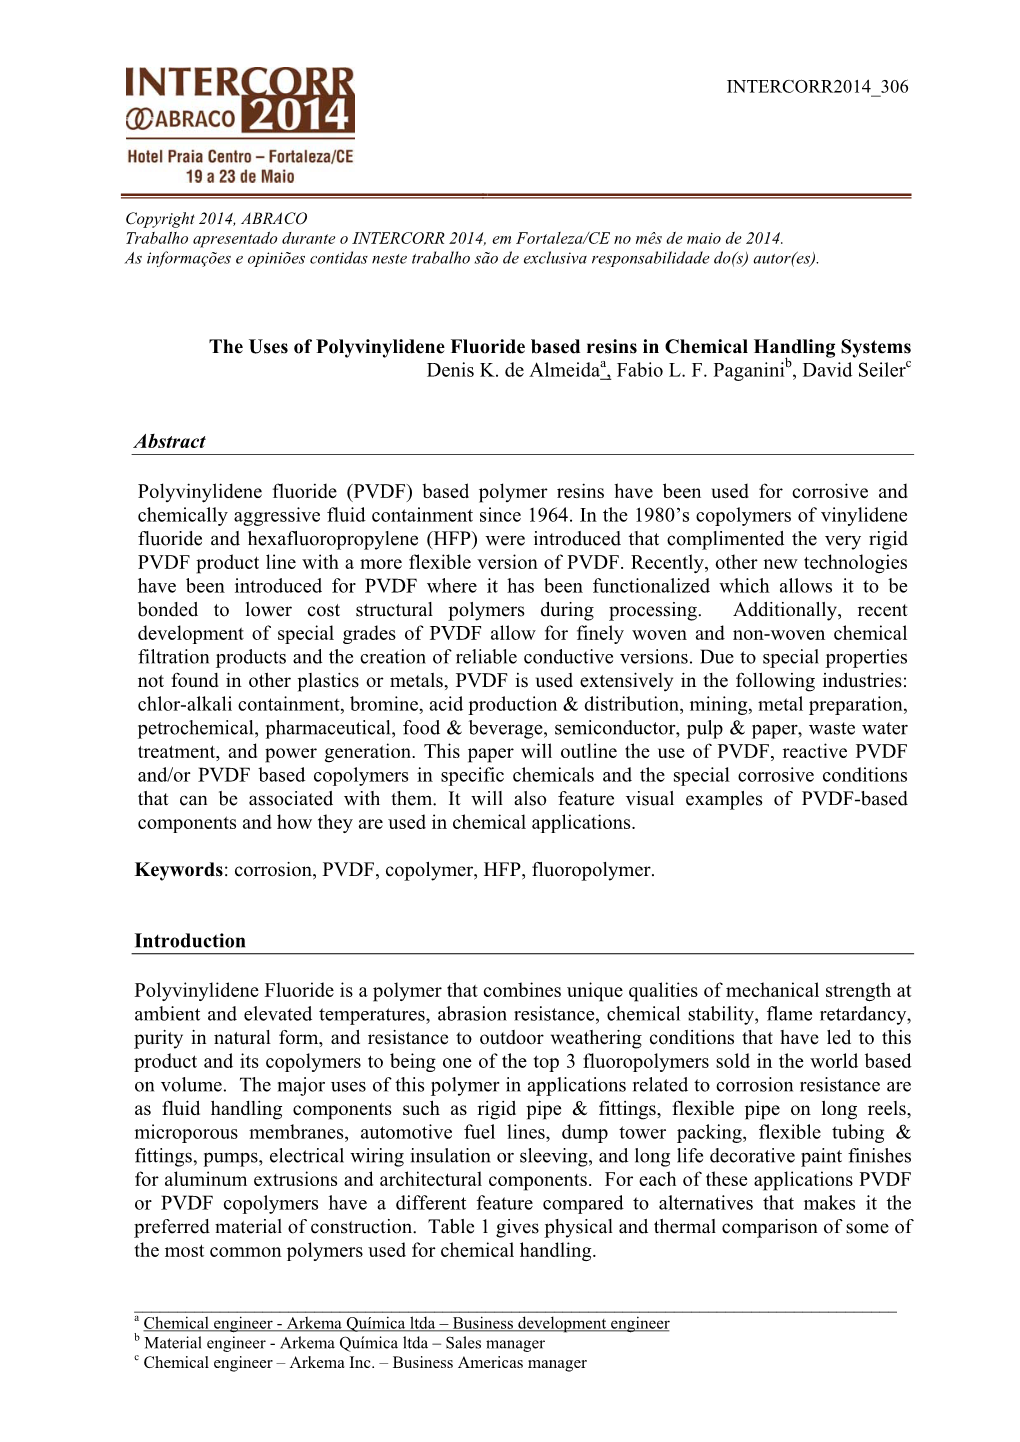 The Uses of Polyvinylidene Fluoride Based Resins in Chemical Handling Systems Denis K